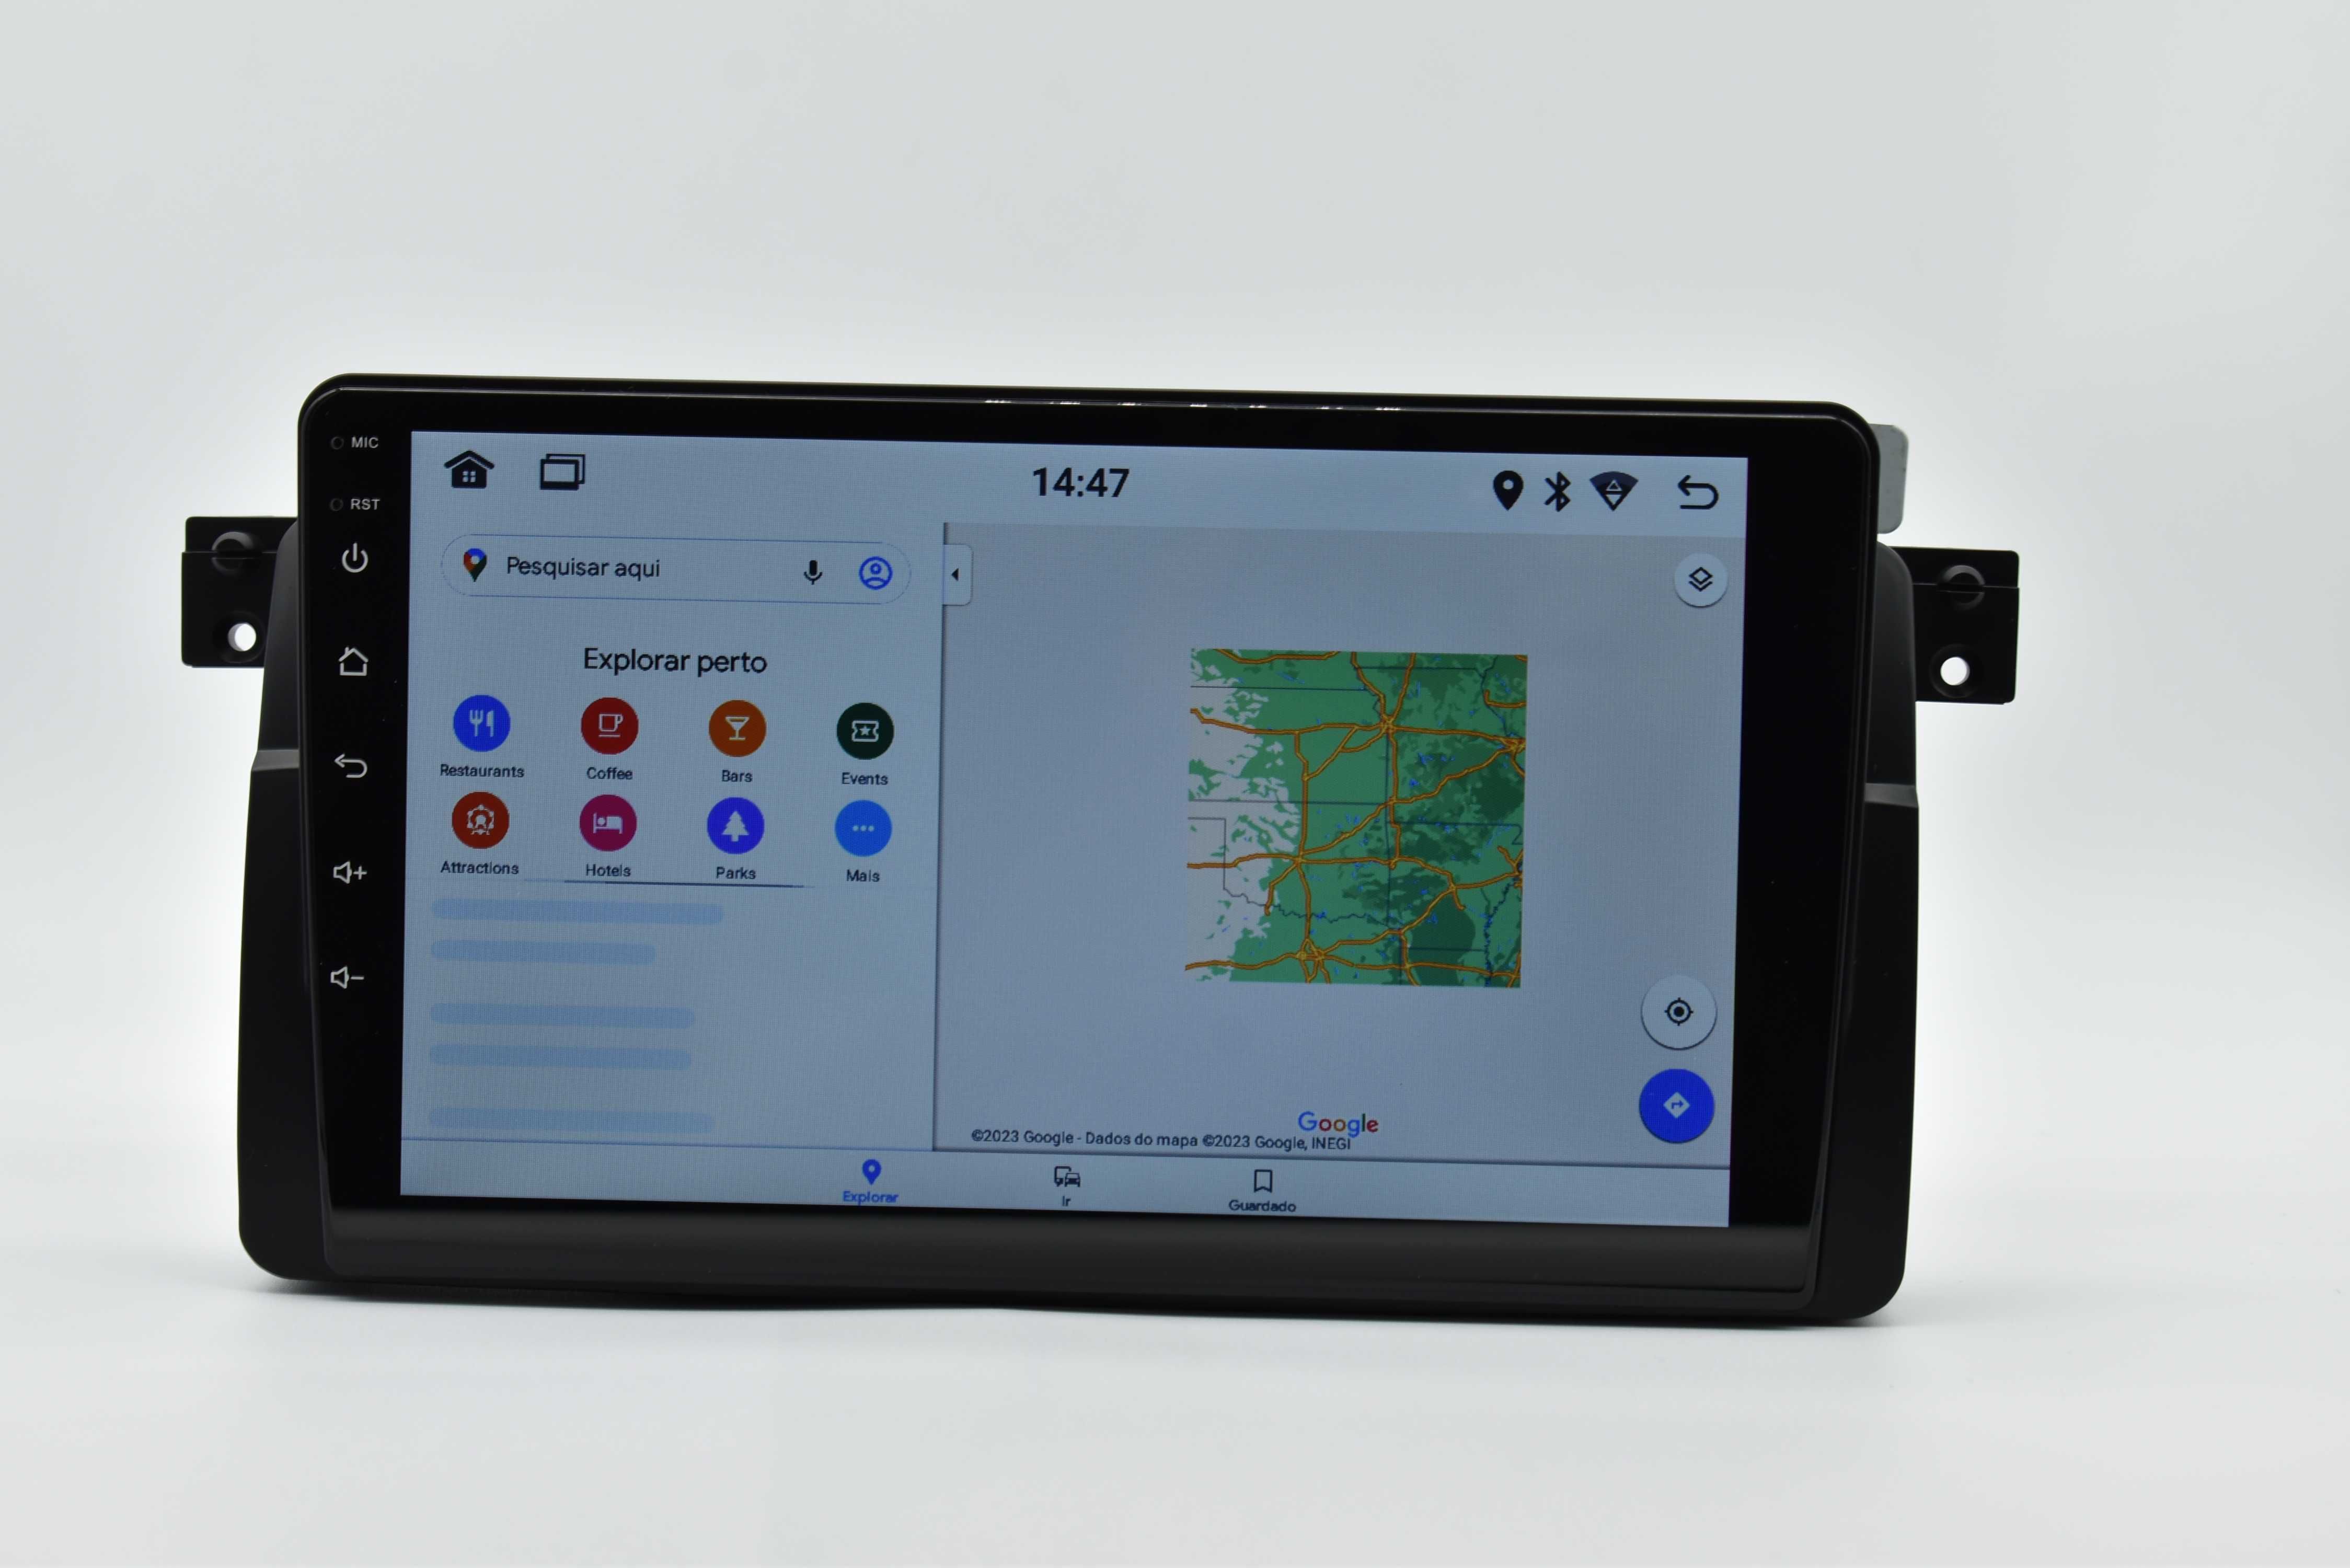 Rádio 2 din android BMW E46  Wifi GPS BLUETOOTH Carplay + câmara